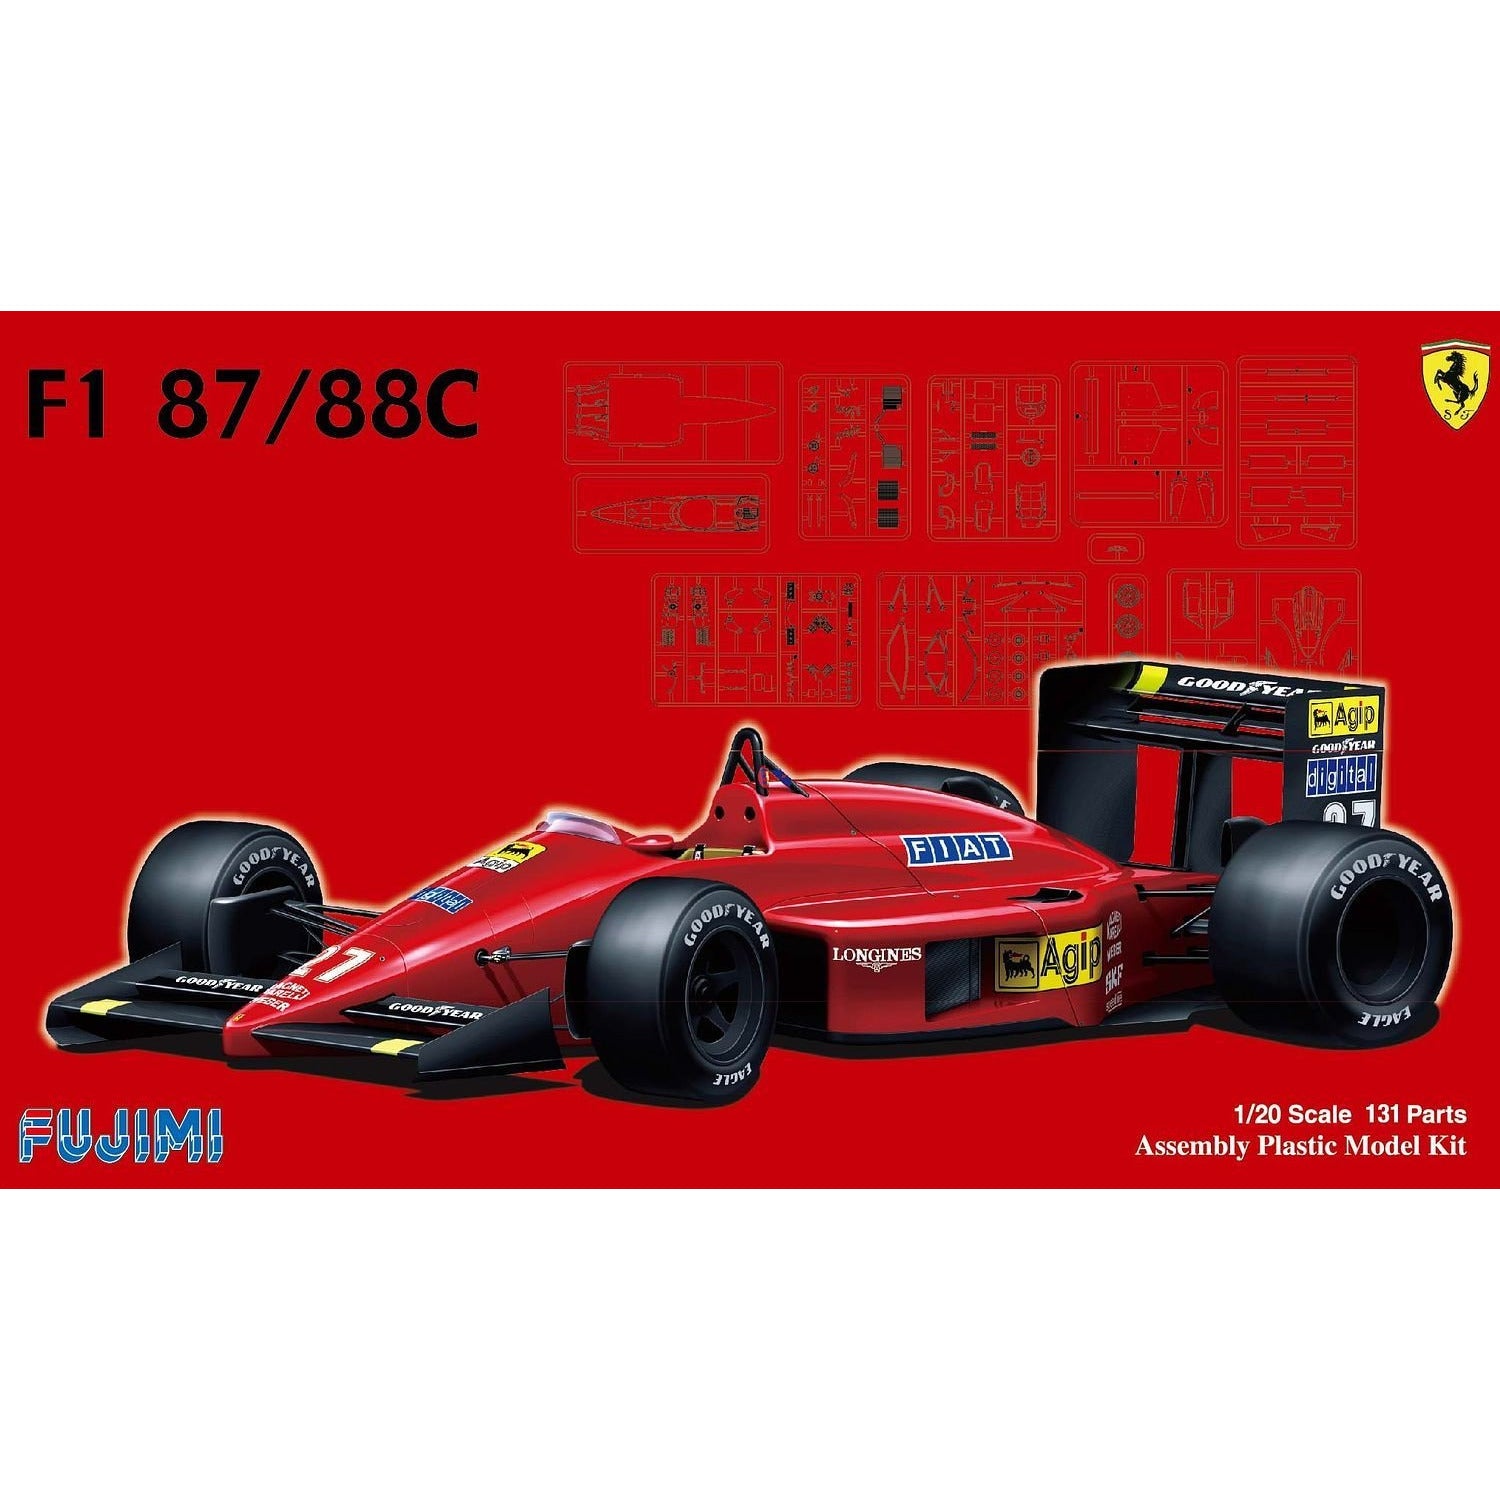 F1-87/88C 1/20 Model Car Kit #091983 by Fujimi